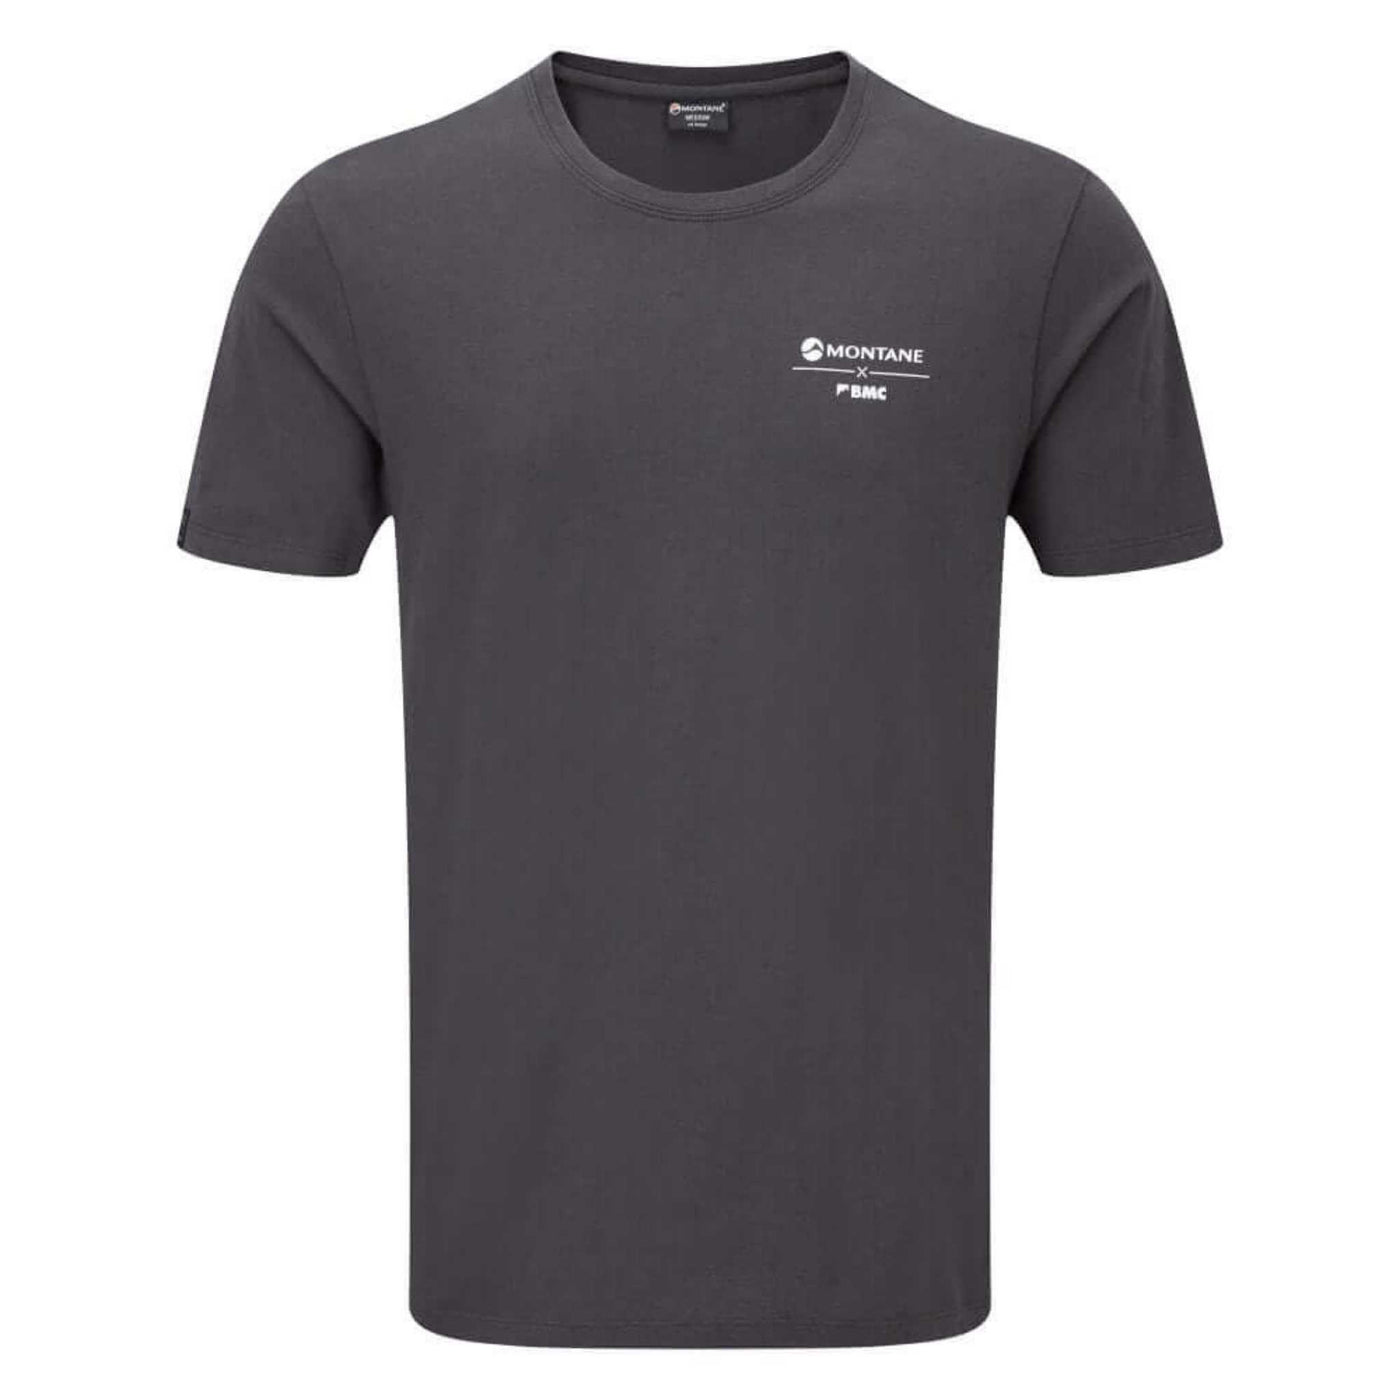 Montane Crag Calls T-Shirt | Organic Cotton T-Shirt NZ | Montane NZ | Further Faster Christchurch NZ #charcoal